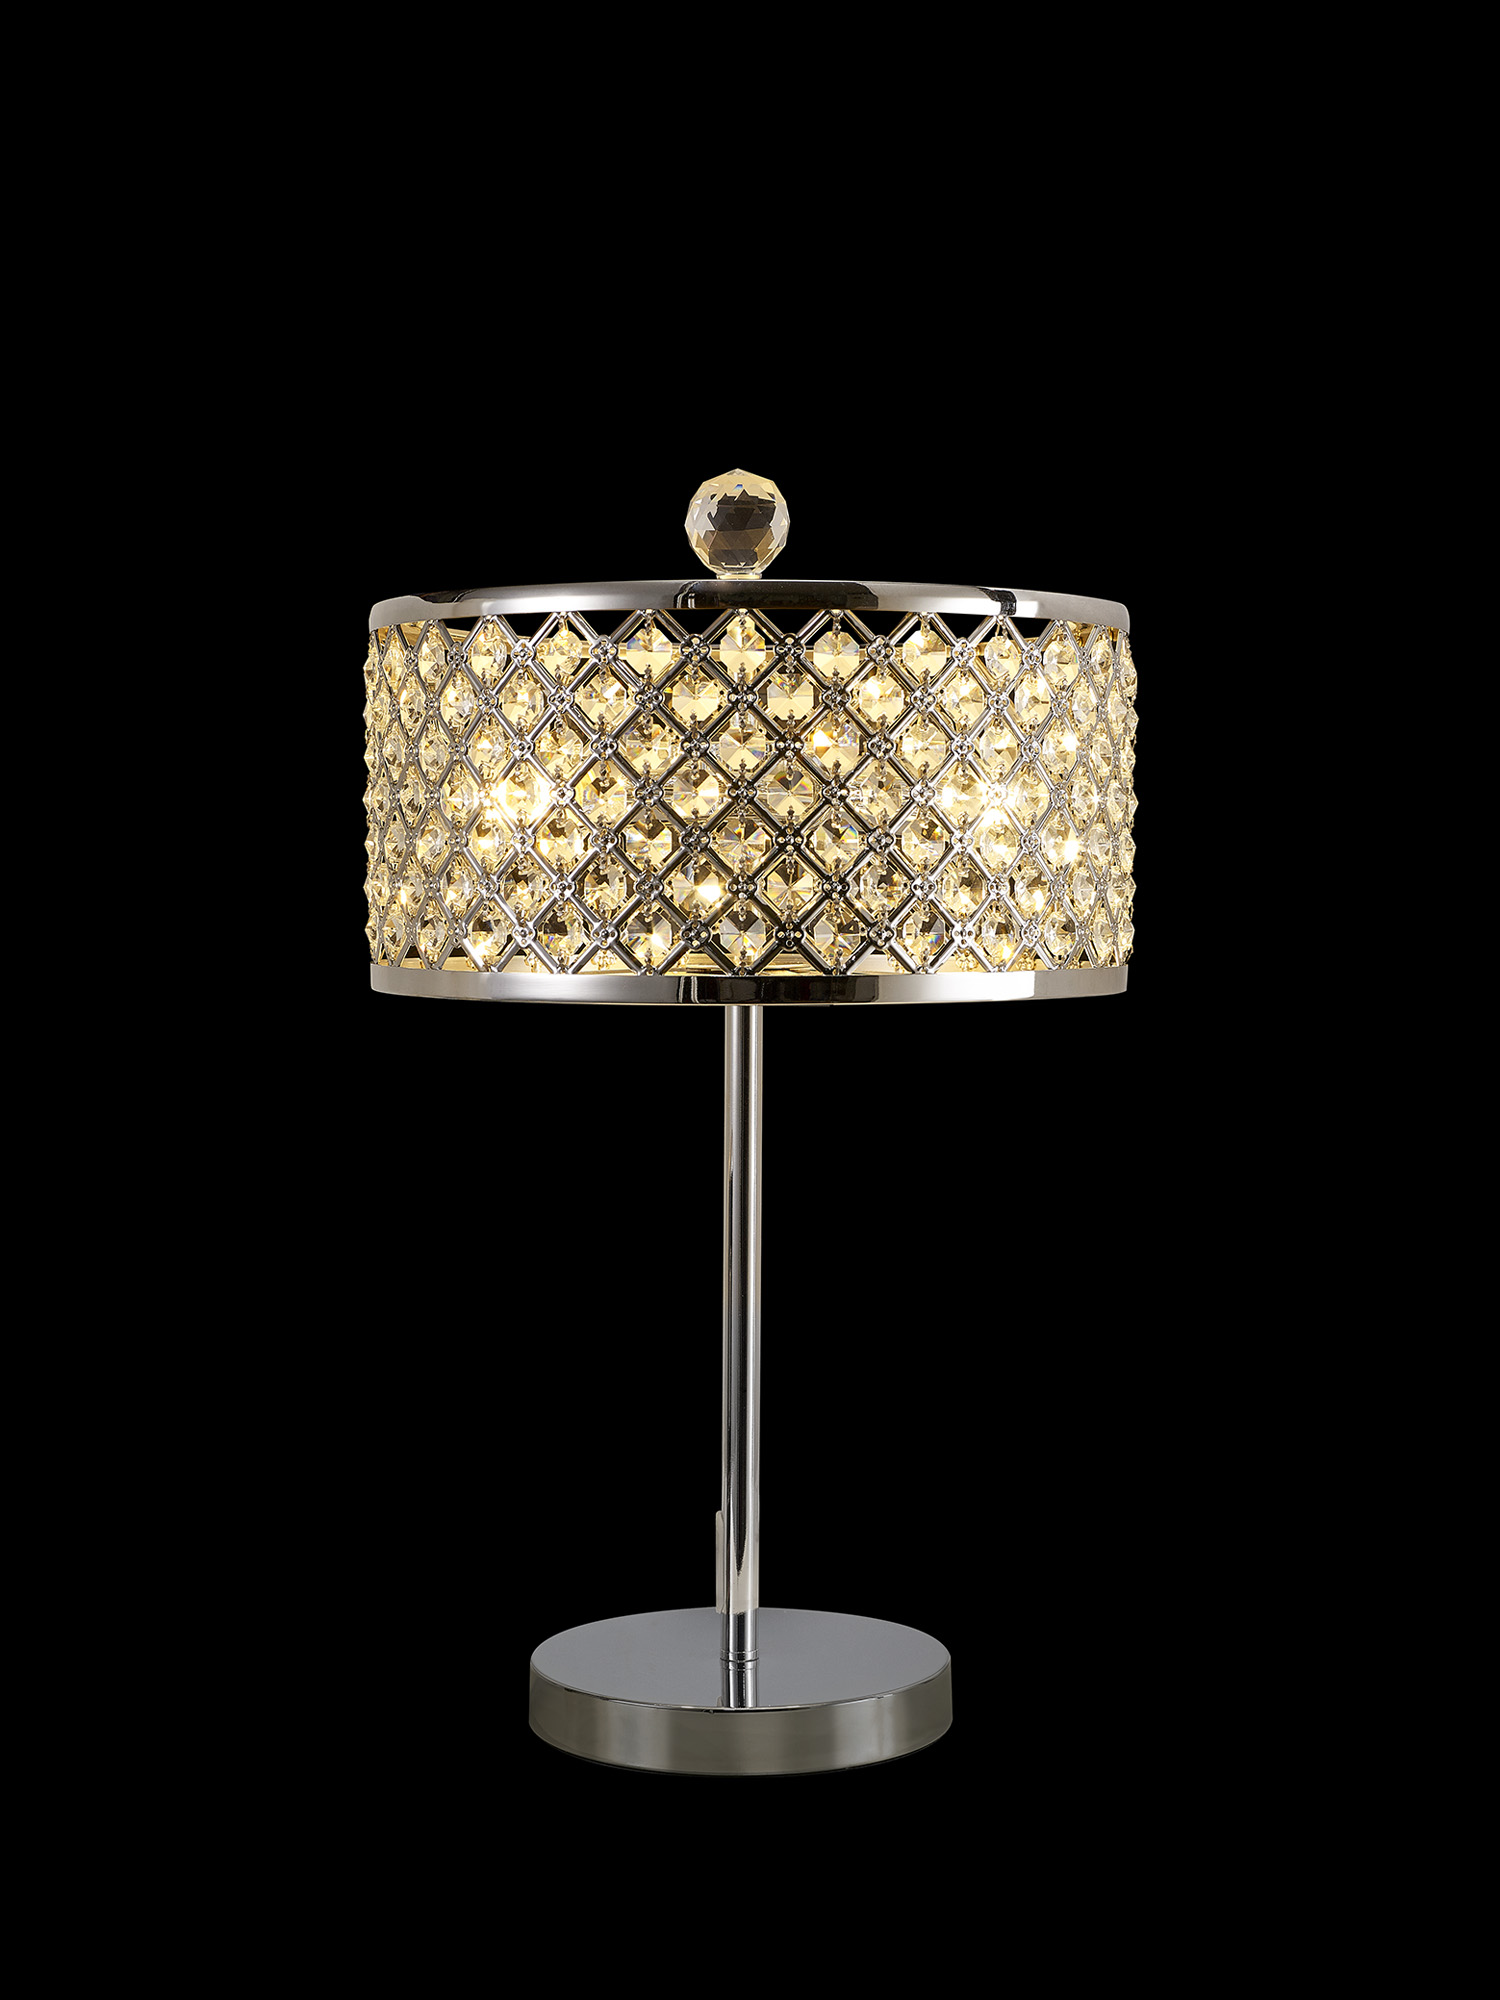 D0755  Sasha 47cm Crystal Table Lamp 2 Light Polished Chrome